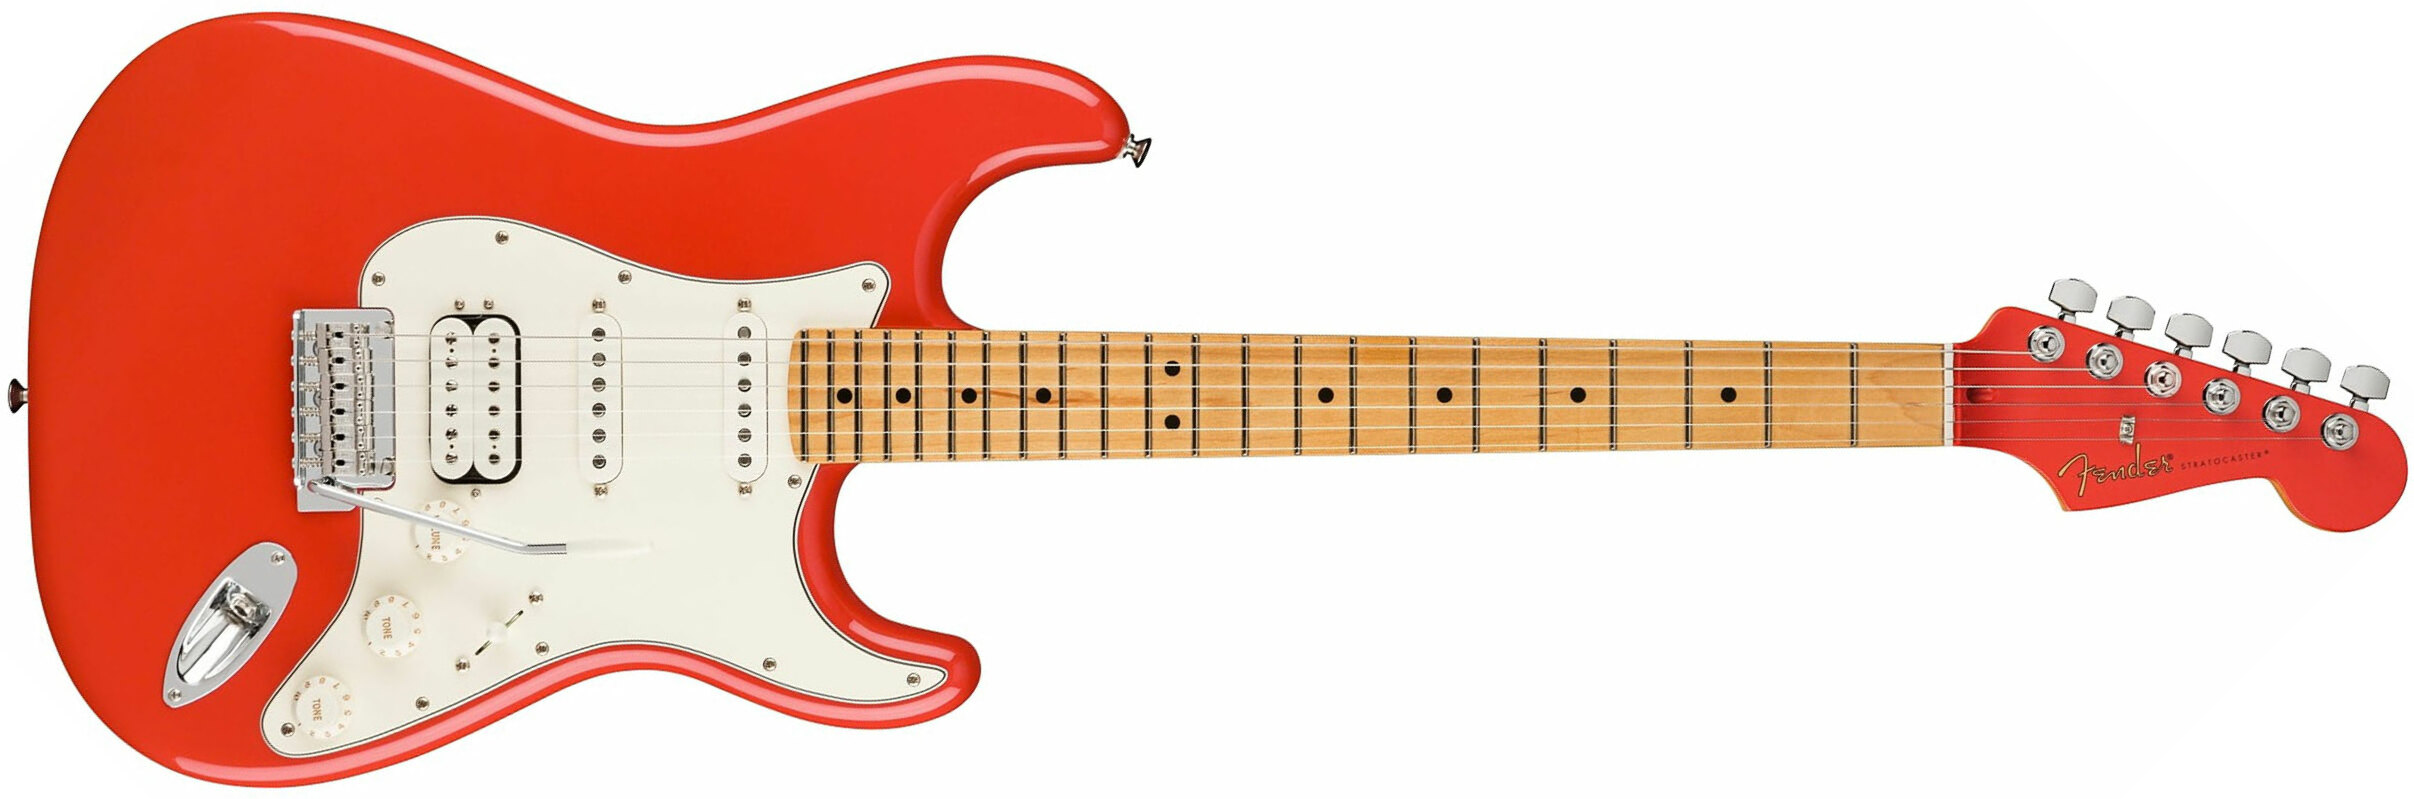 Fender Strat Player Hss Ltd Mex Trem Mn - Fiesta Red - Guitare Électrique Forme Str - Main picture